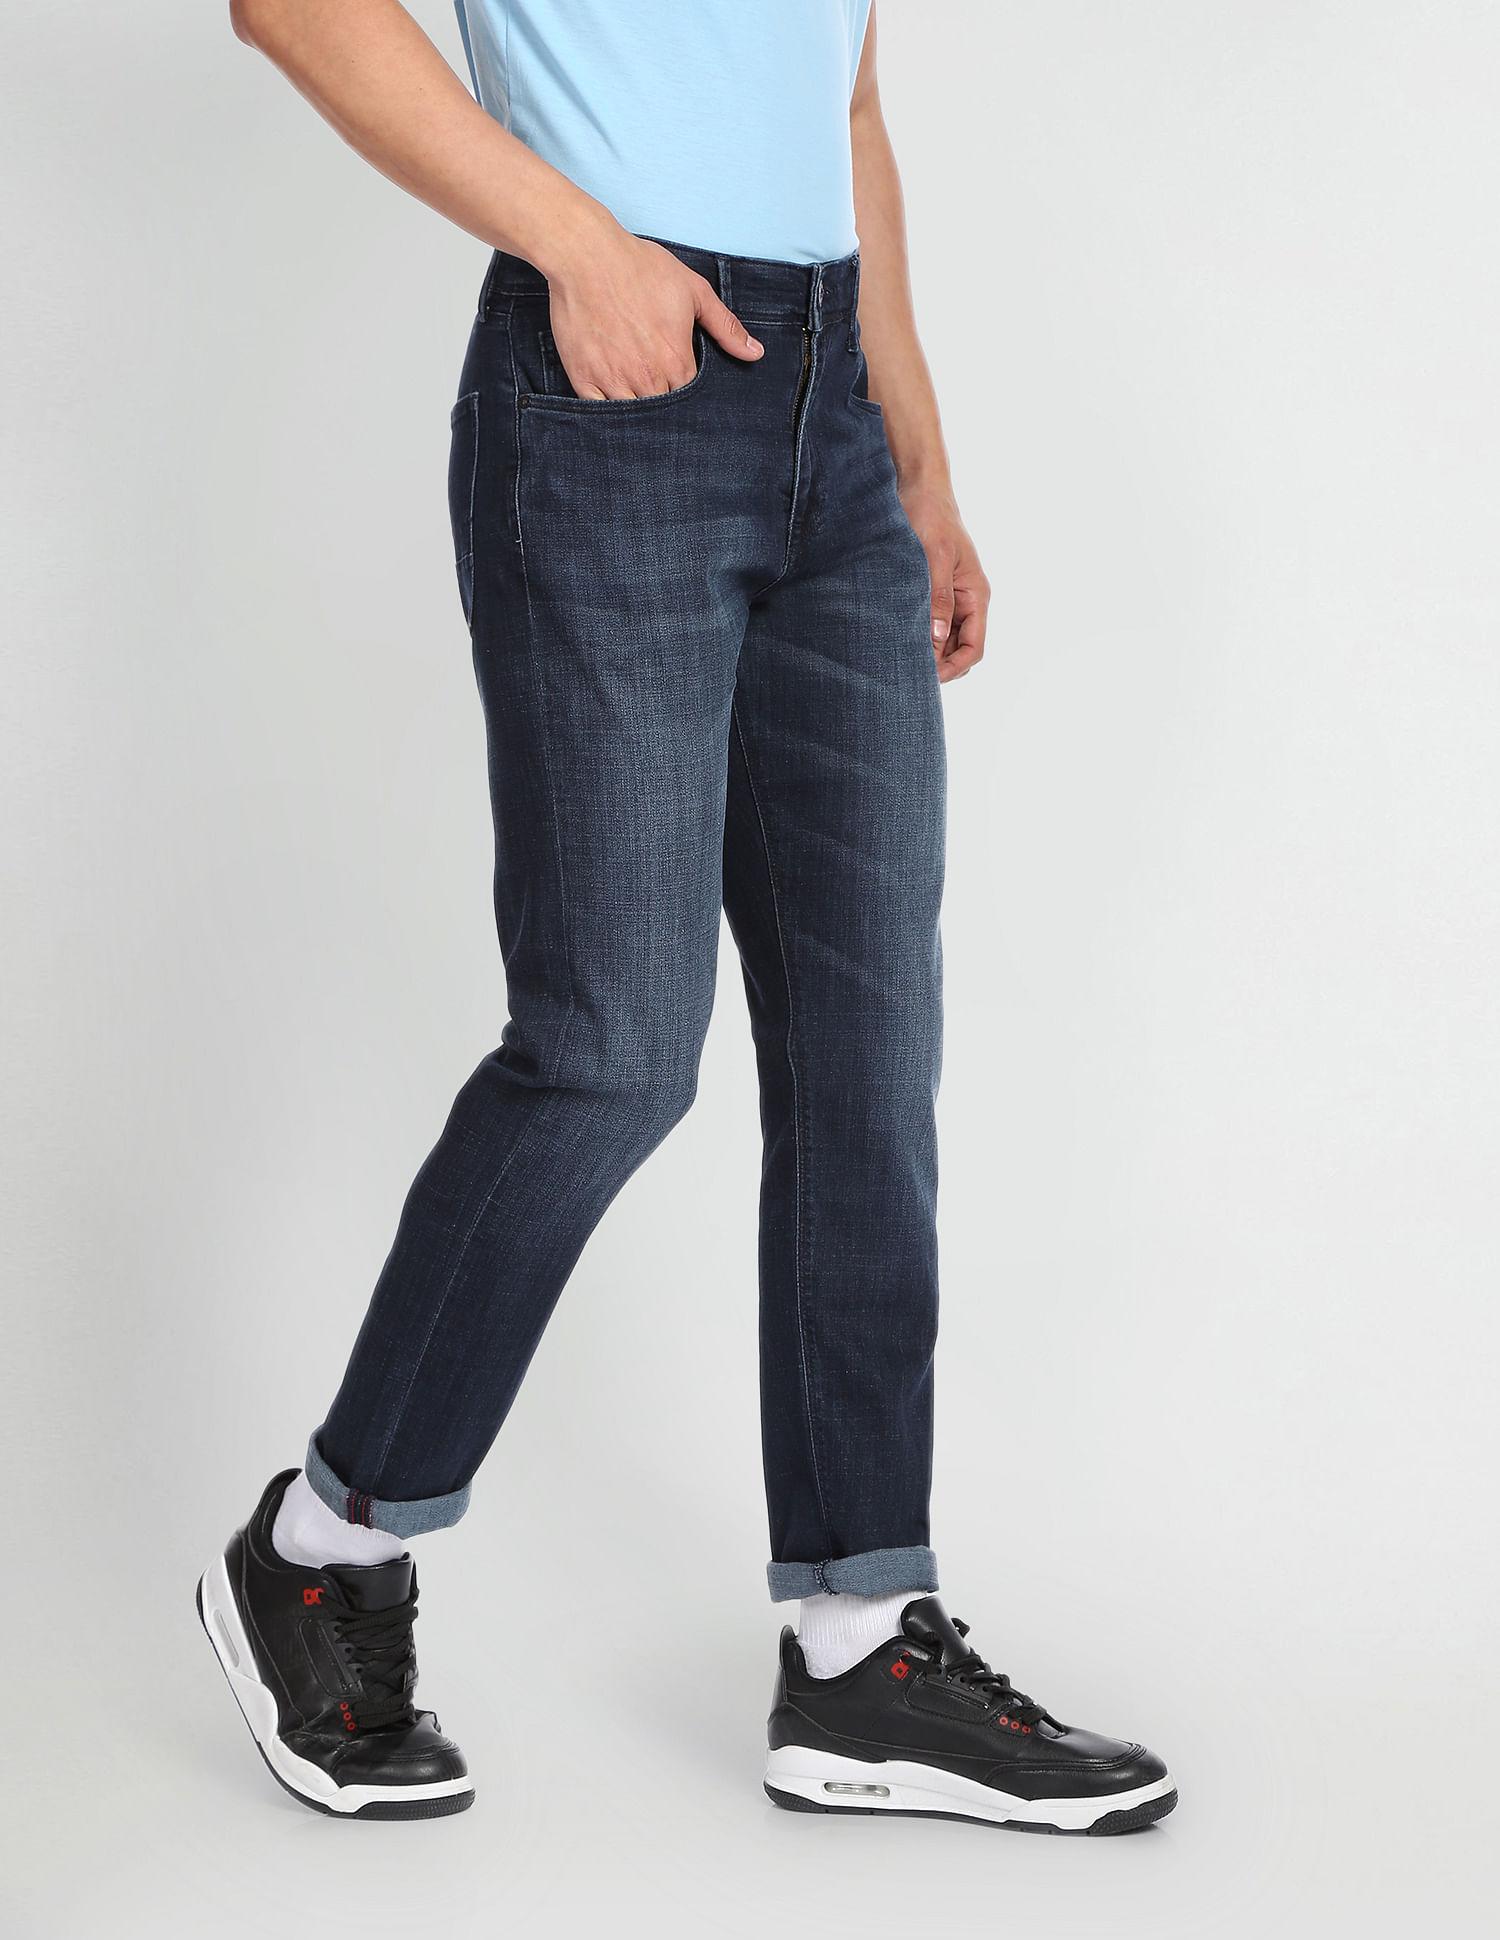 dark-wash-authentic-signature-jeans